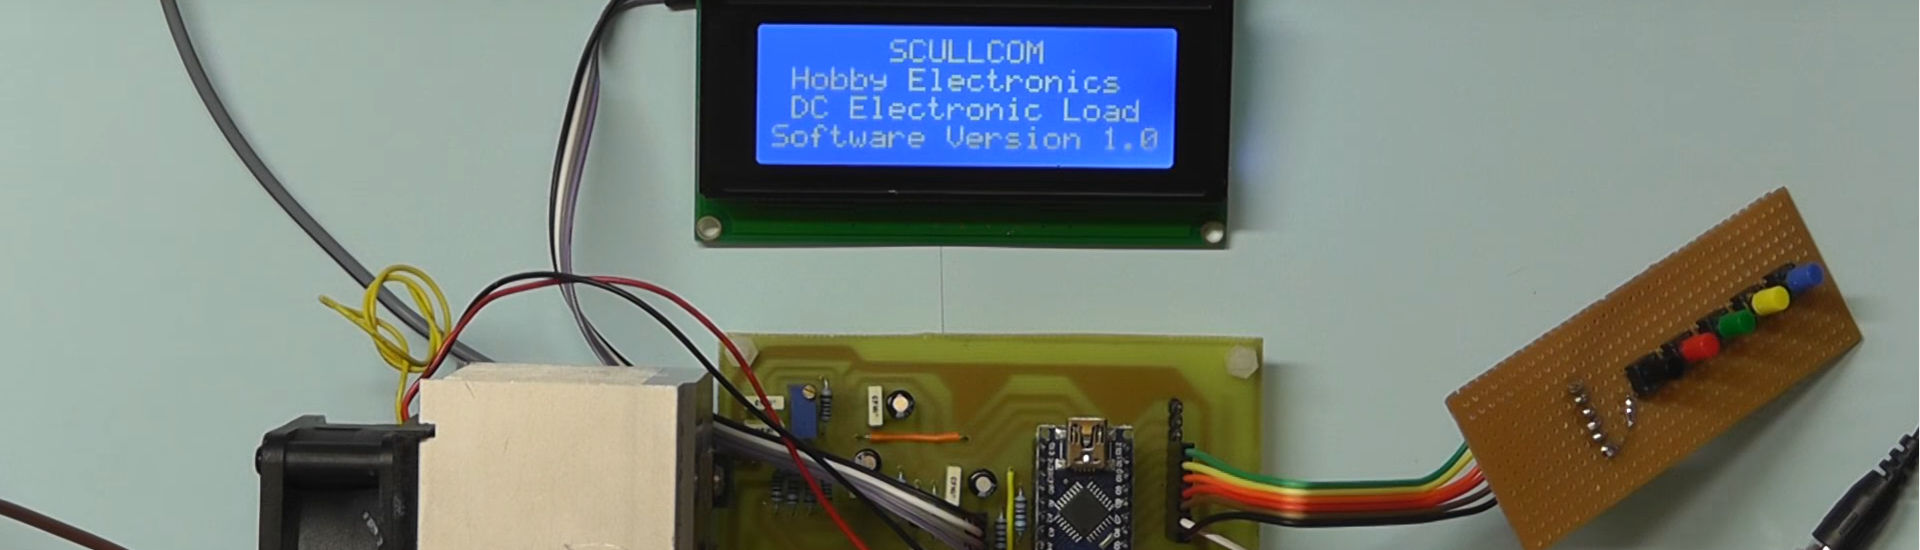 PCB Para DC Voltaje Calibrador-scullcom Hobby Electronics 